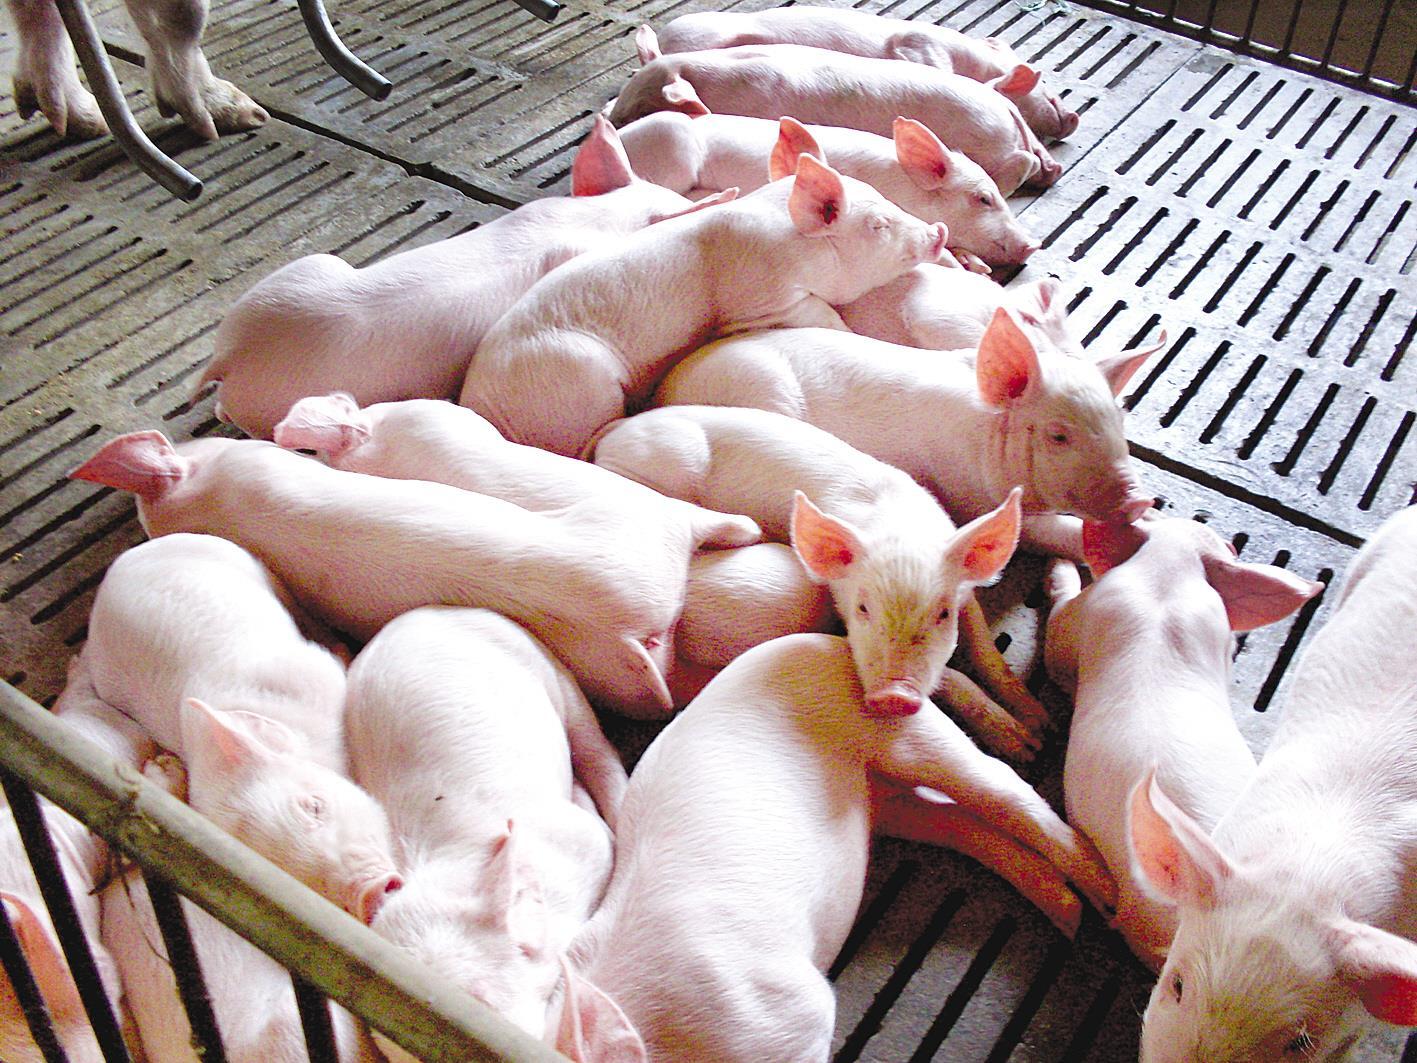 近日,省政府出台《关于做好生猪保供稳价工作的通知》,提出8项生猪稳